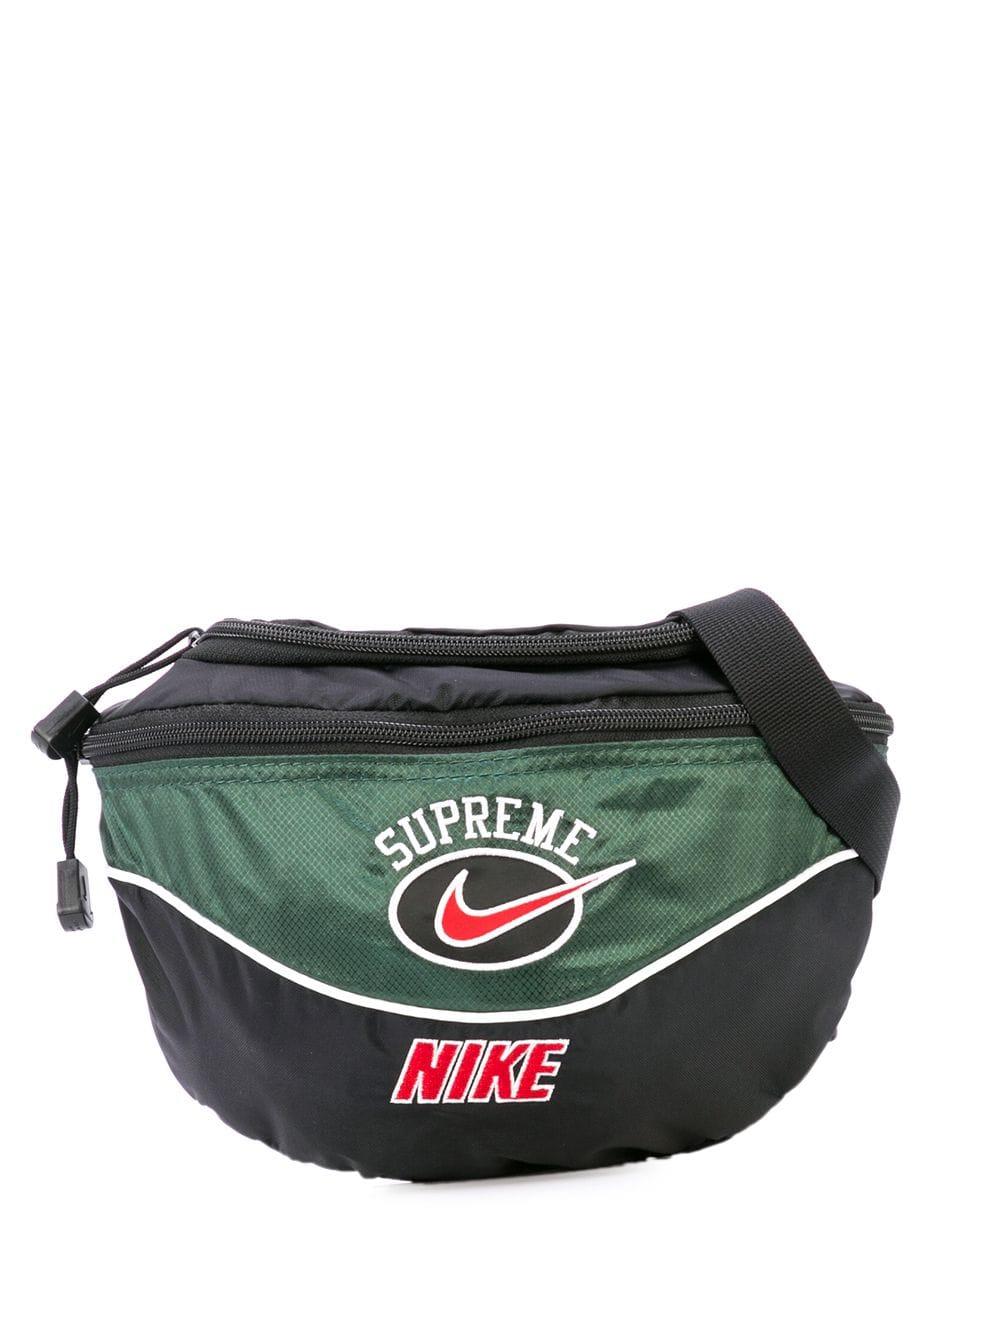 Supreme X Nike Belt Bag in Black for Men - Lyst